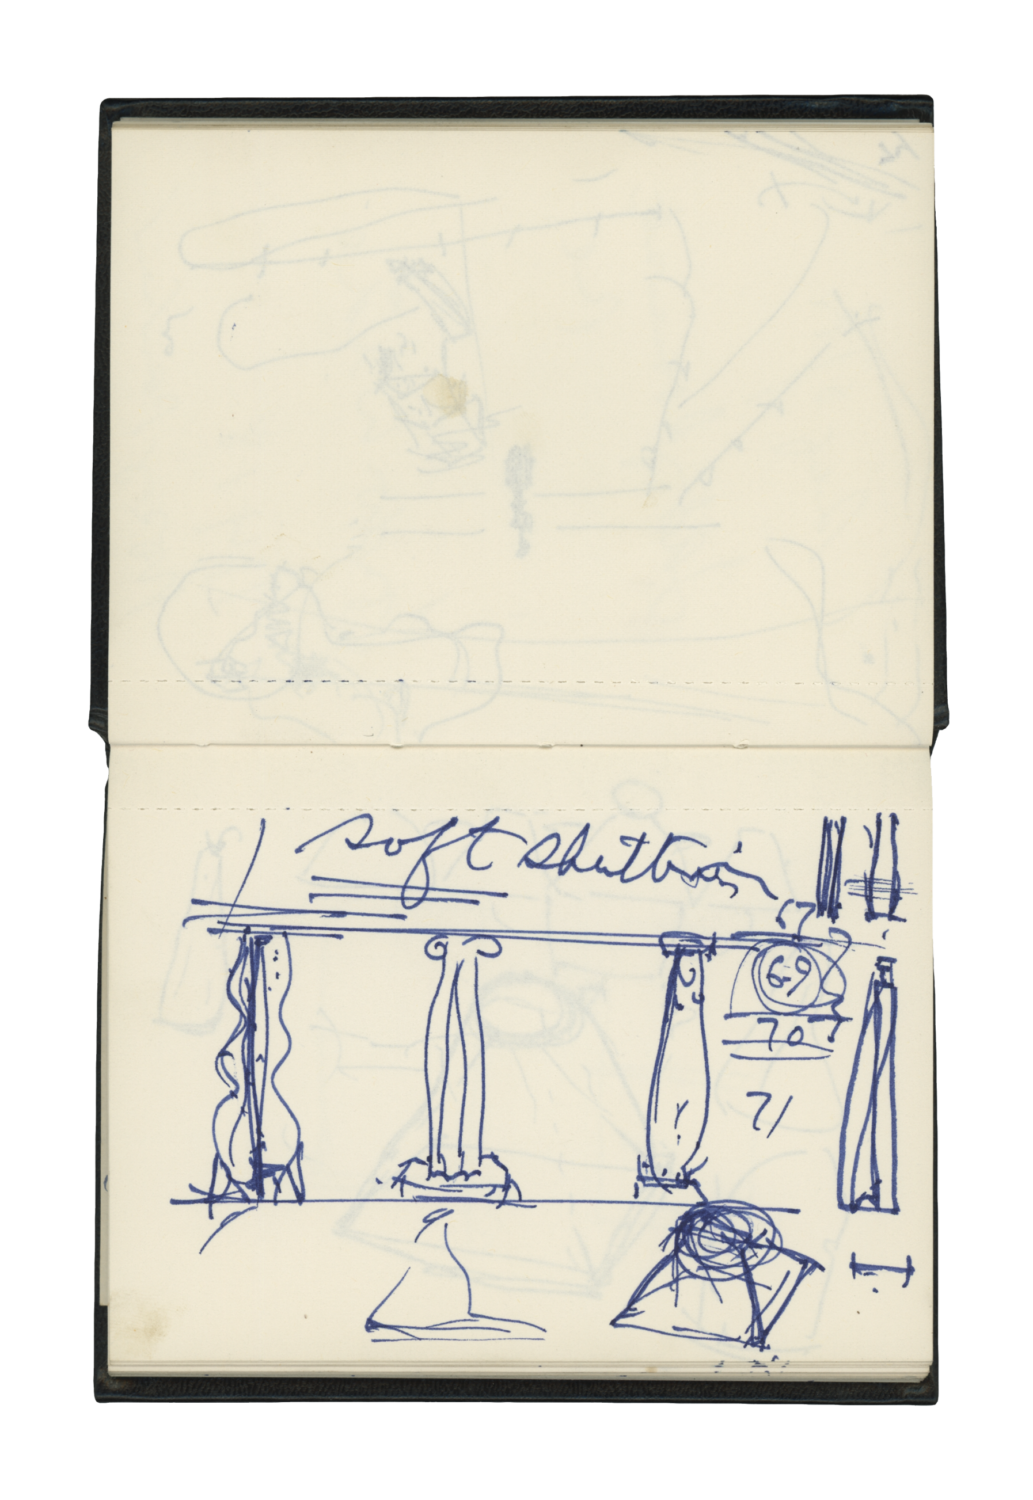 Sketch and notebook (September – October 1980)